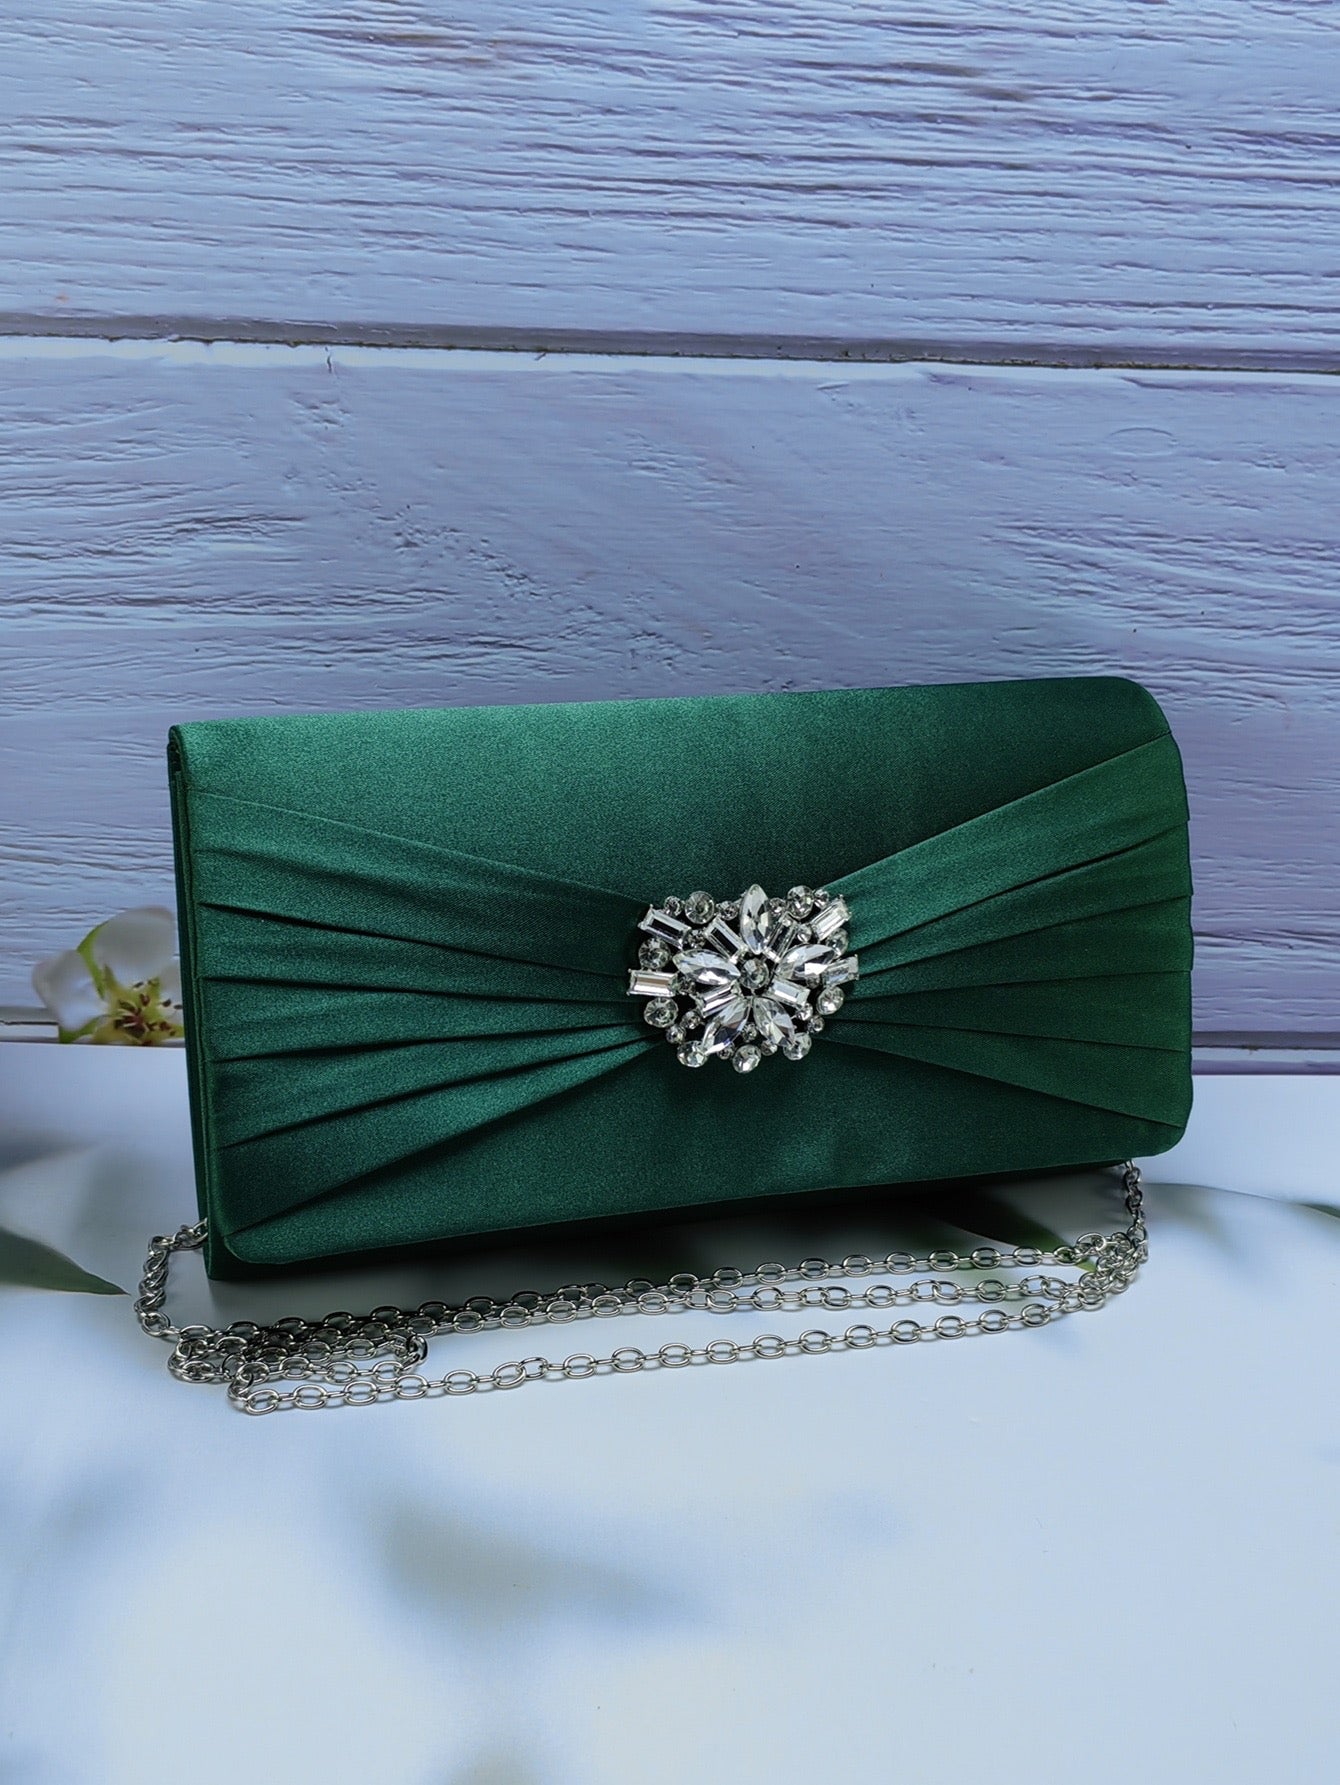 Rhinestone Clutch - Emerald